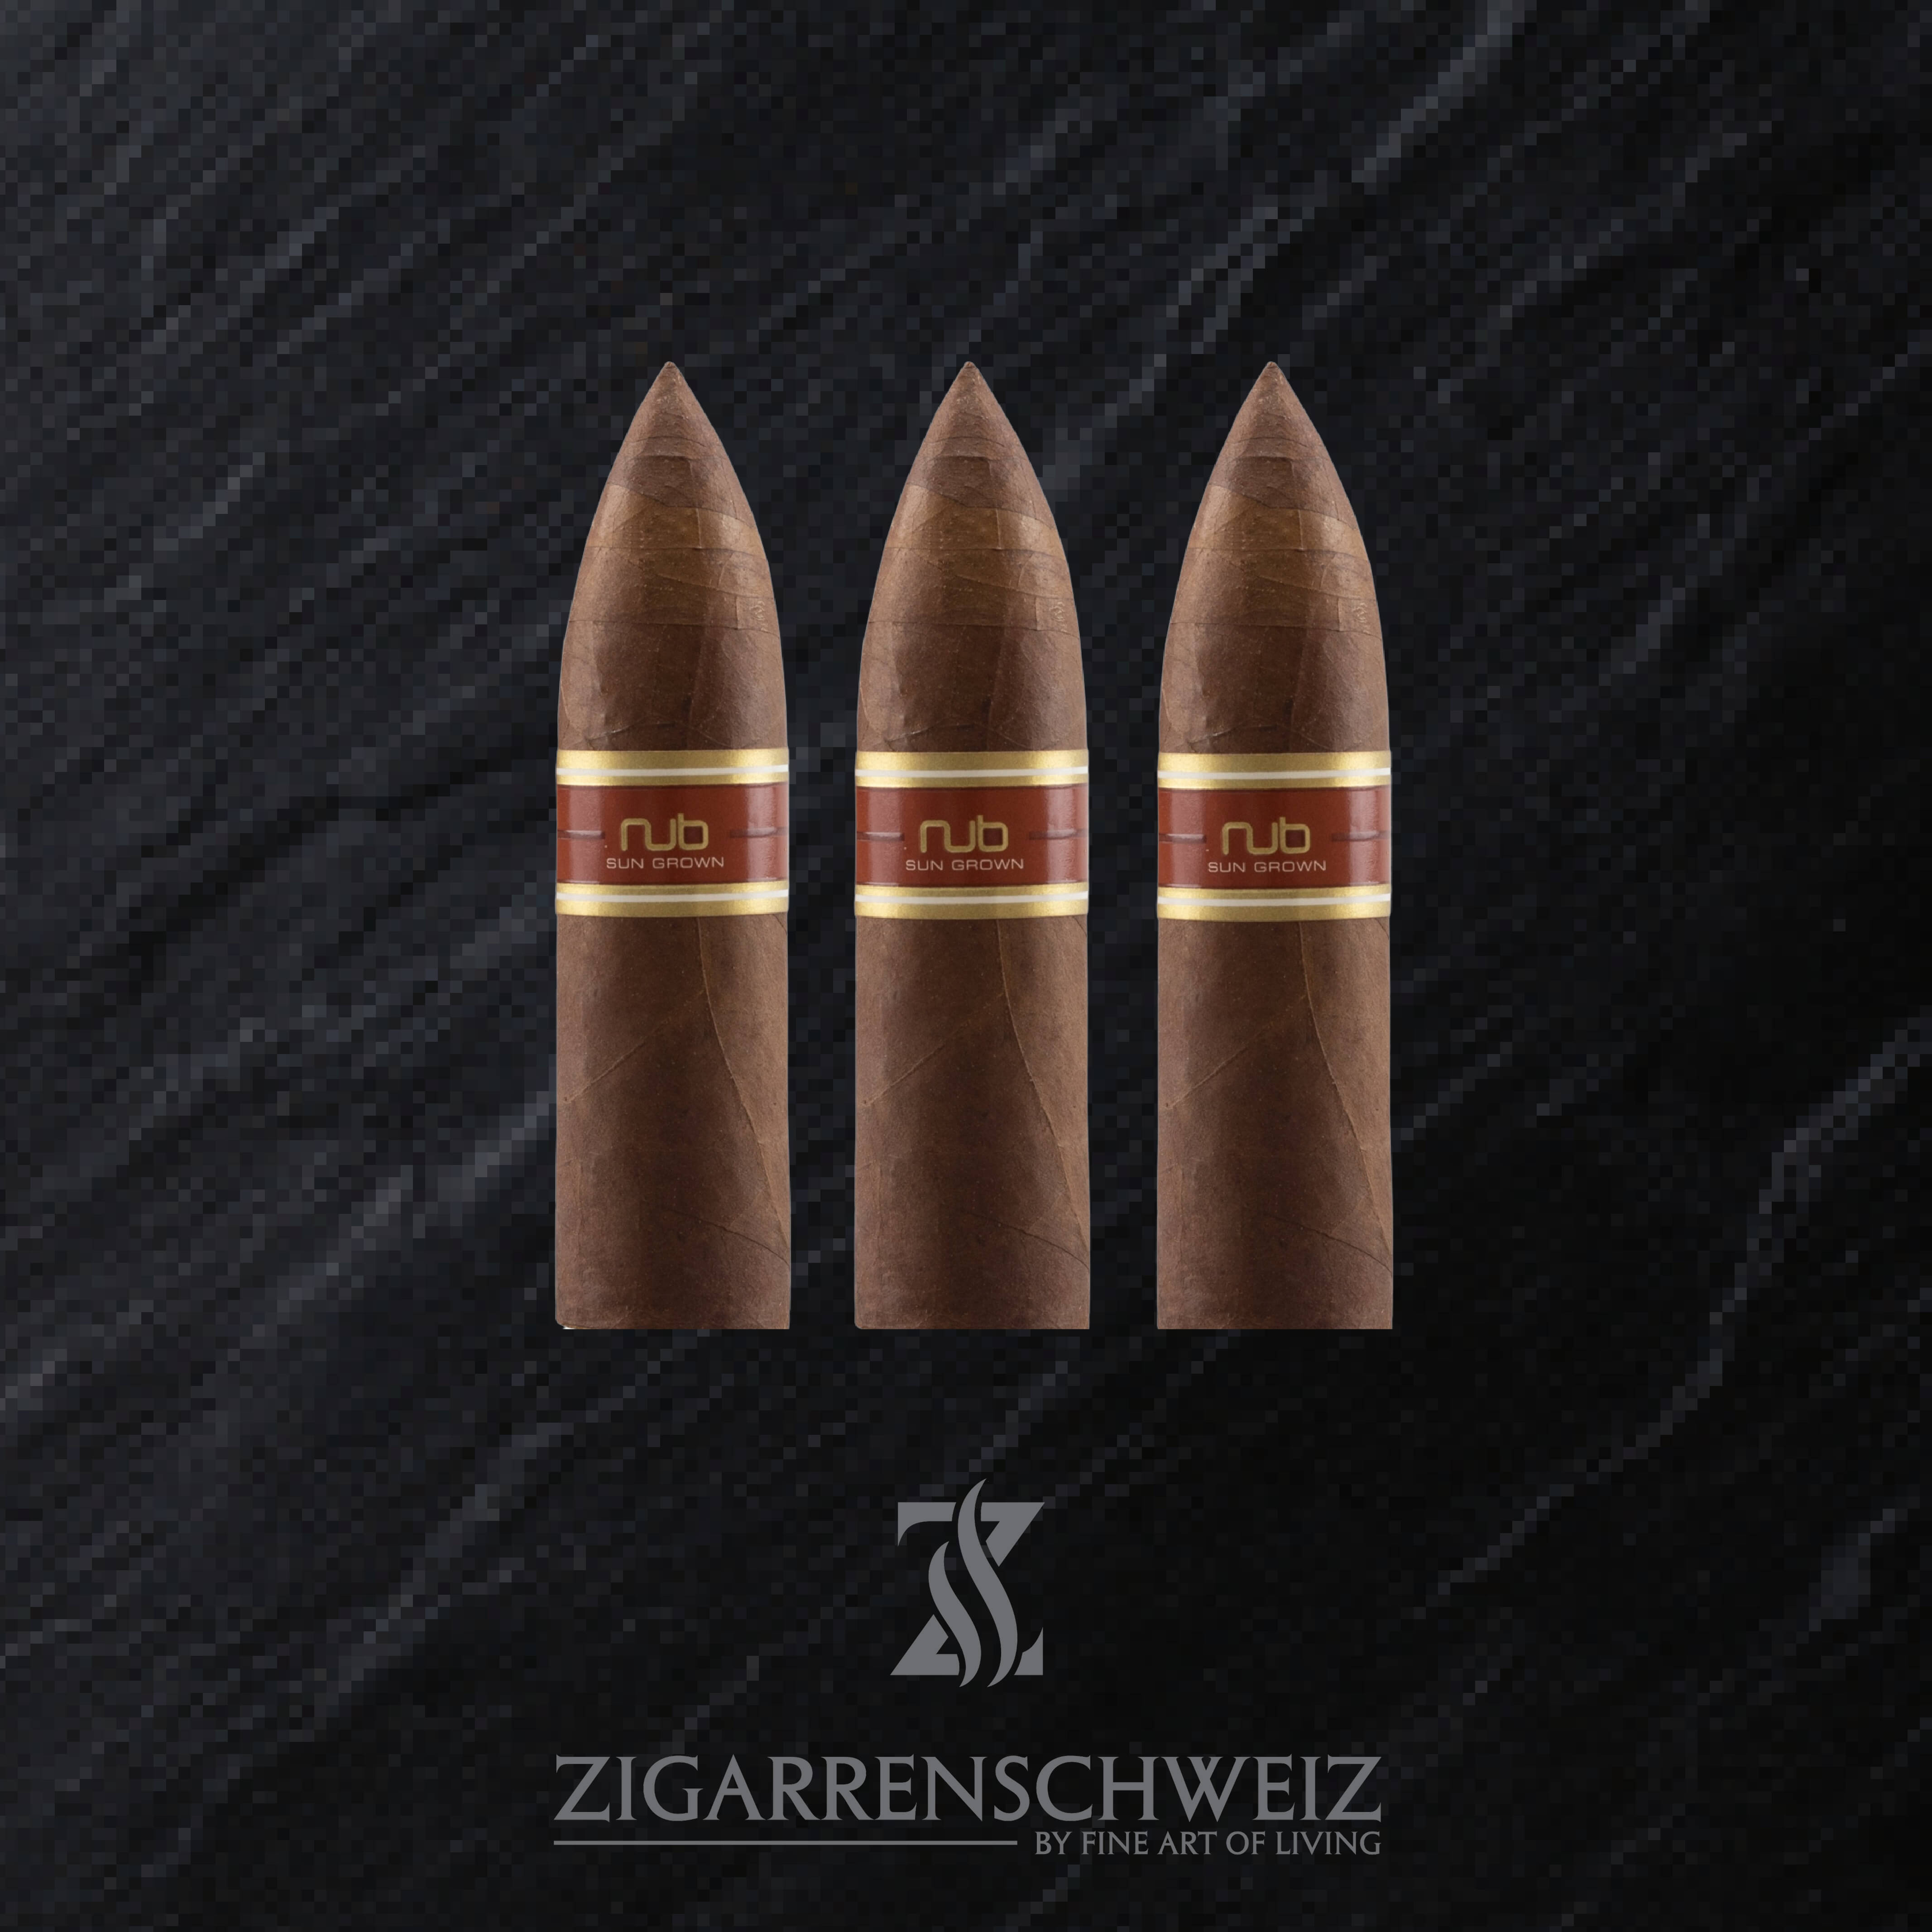 NUB Sungrown 464 (Torpedo) Zigarren 3er Etui von Zigarren Schweiz